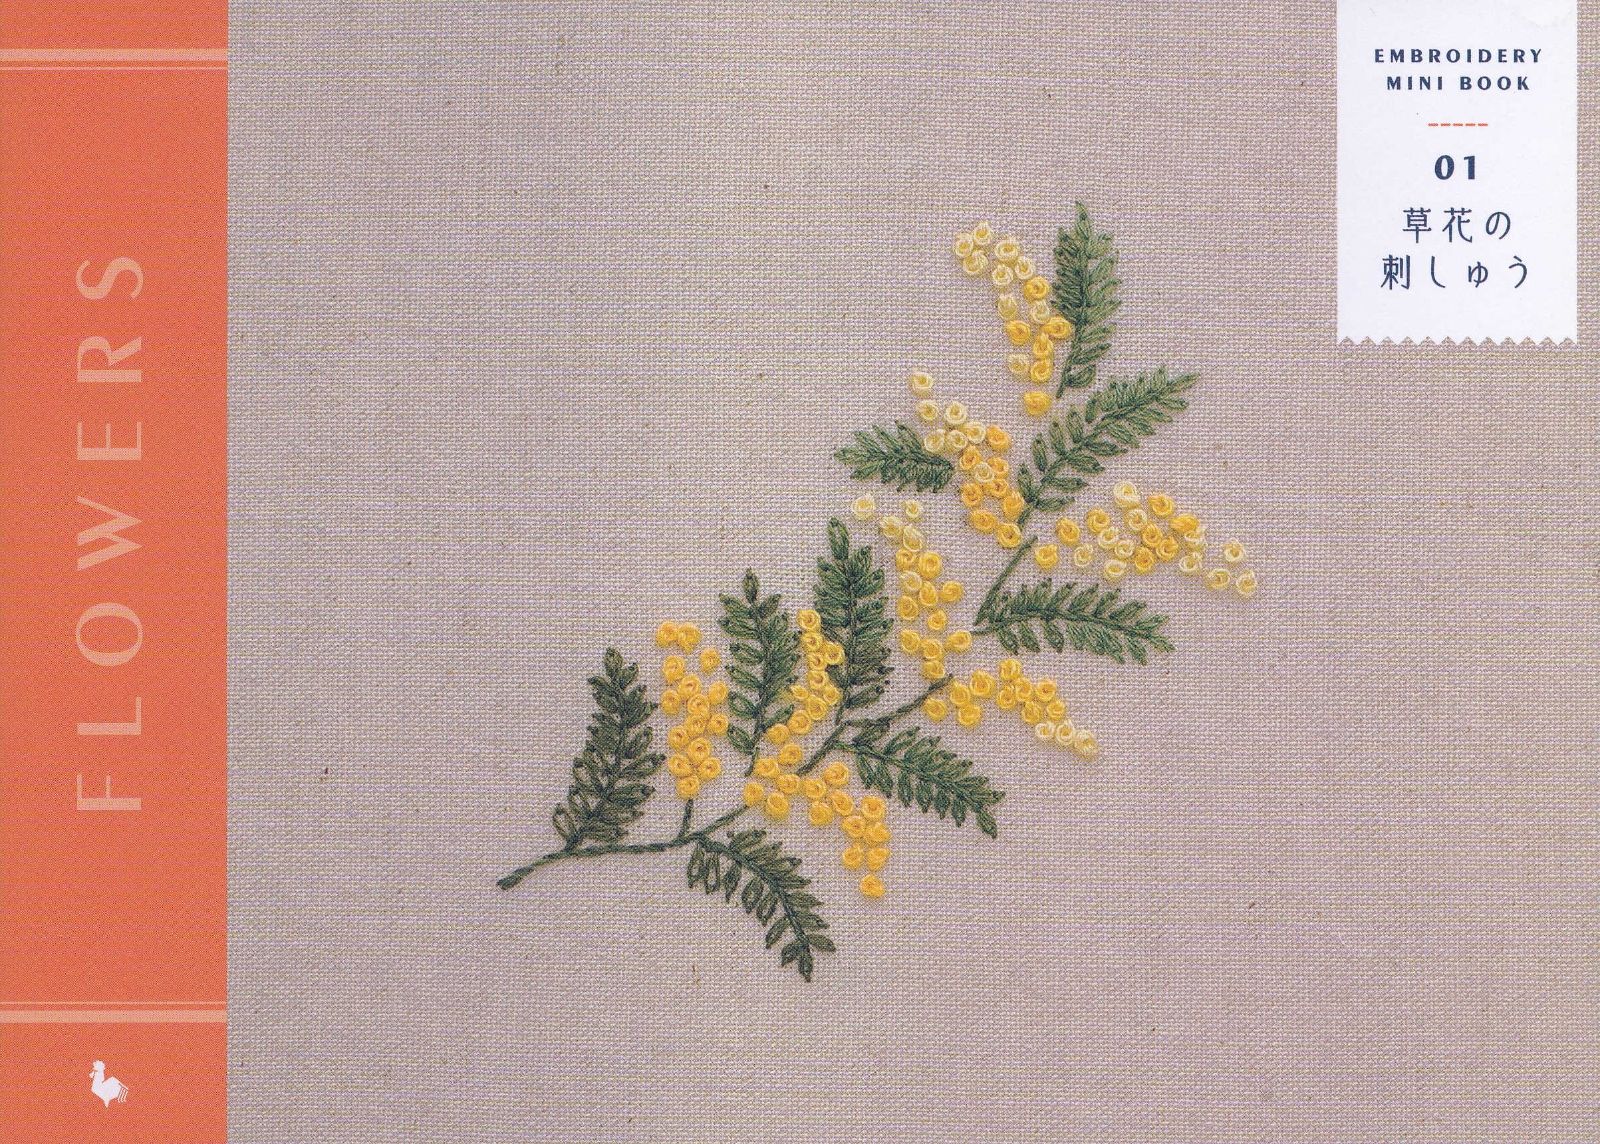 【謝恩価格本】EMBROIDERY MINI BOOK 01 FLOWERS 草花の刺しゅう